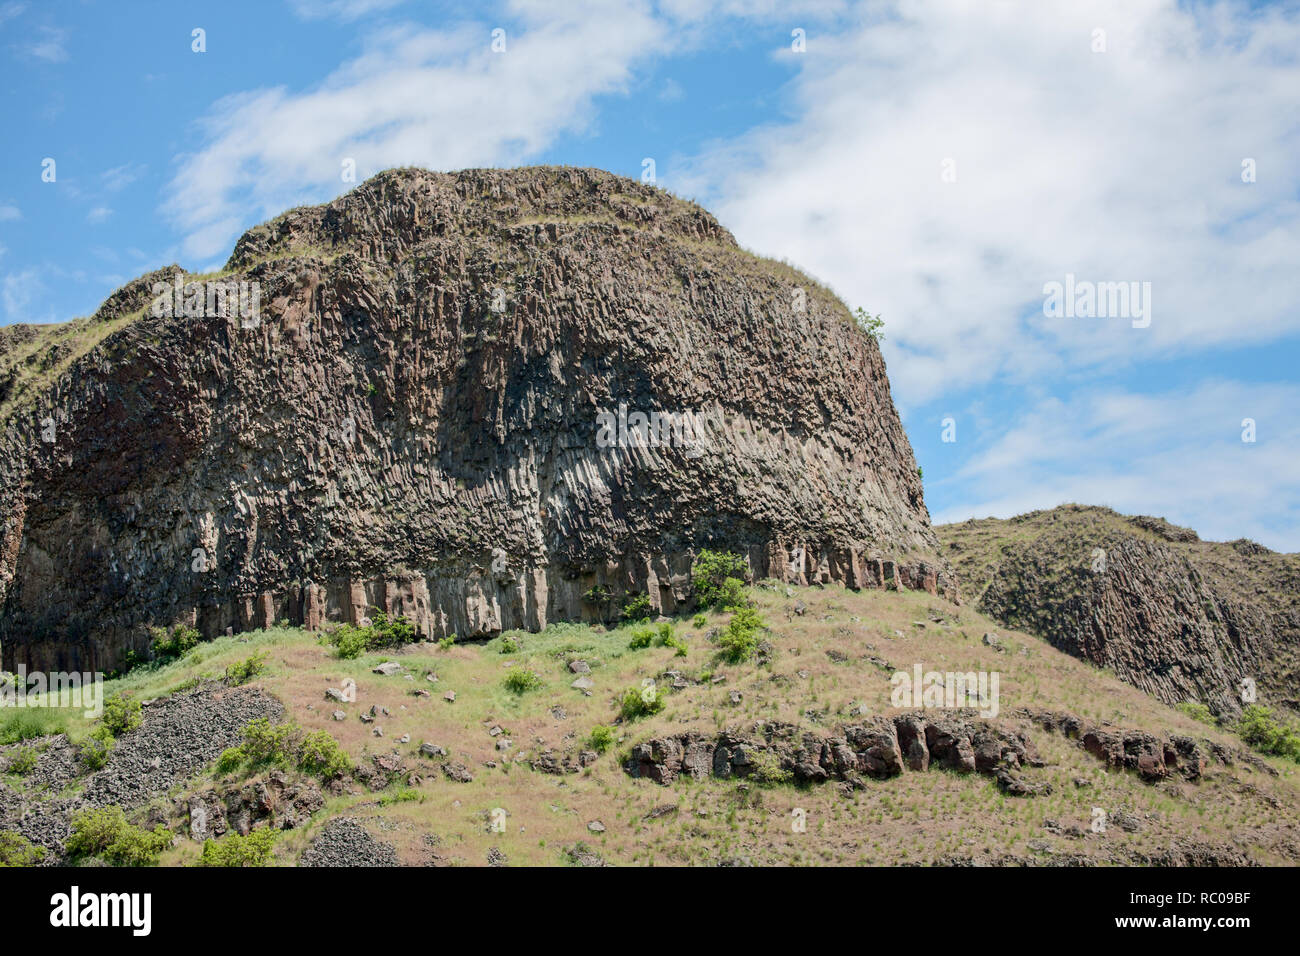 La rhyolite est une roche ignée. Les structures sont appelées colonnes de jointoiement. Vue à partir de la rivière Snake dans le Hells Canyon National Recreation Area. Banque D'Images